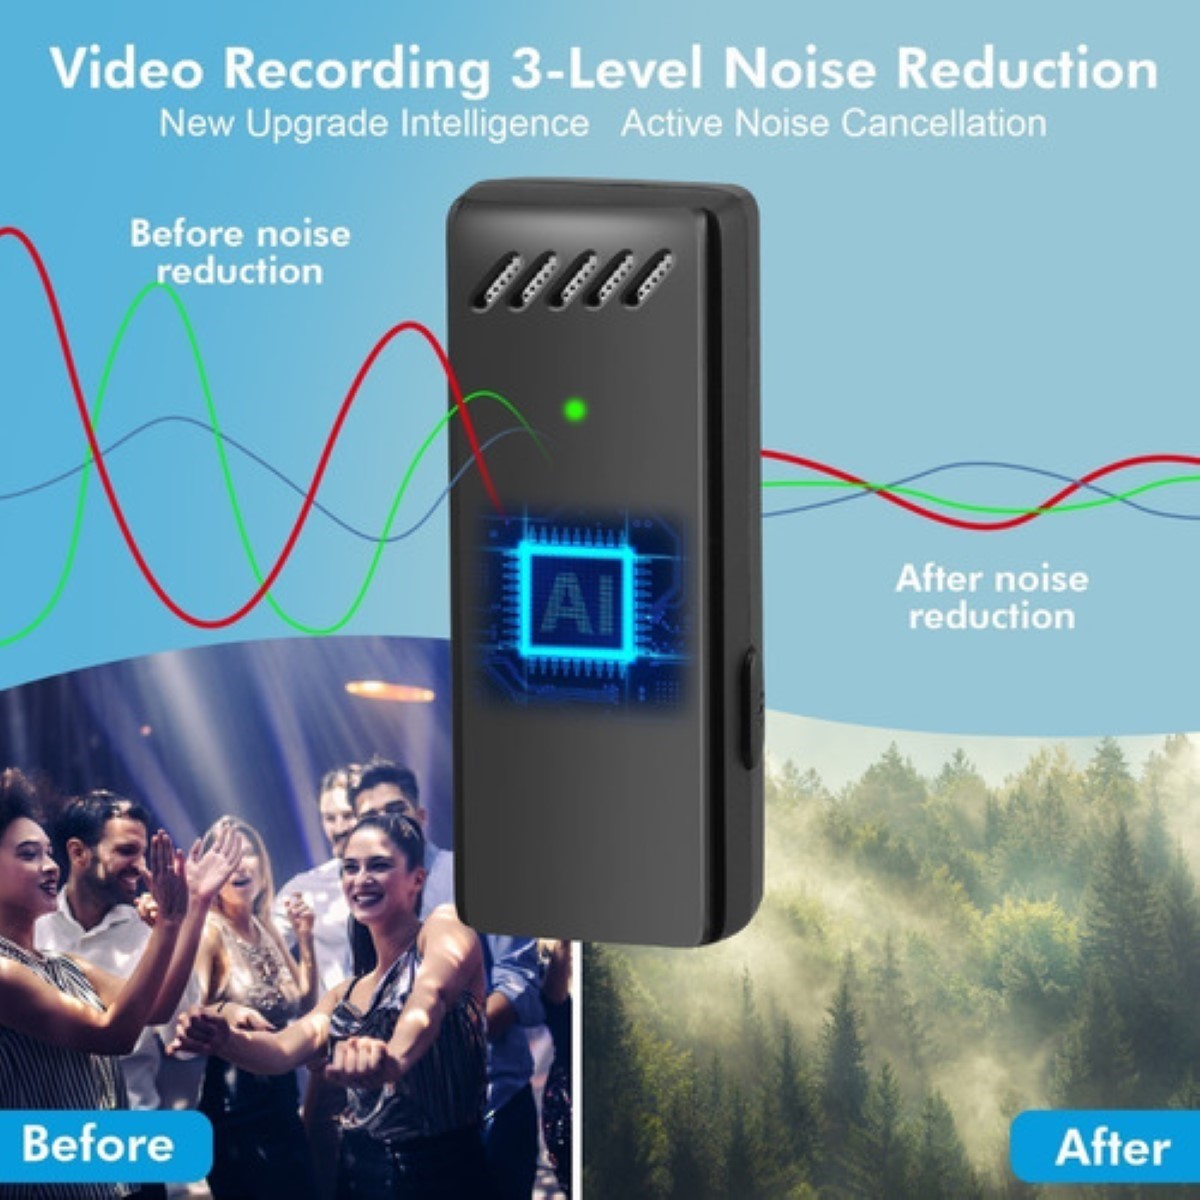 Micrófono Lavalier inalámbrico para iPhone, 2 mini micrófonos de solapa con  audio más claro para grabación de video, entrevista, vlog (negro)